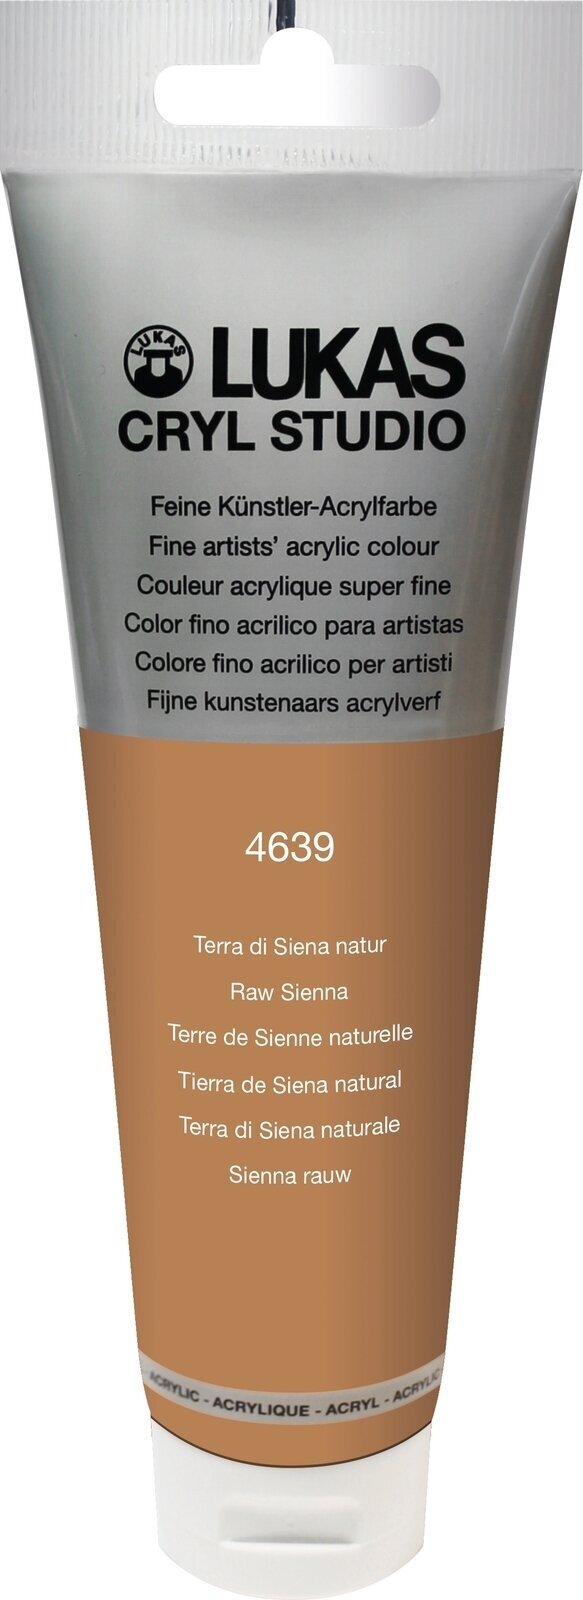 Tinta acrílica Lukas Cryl Studio Acrylic Paint Plastic Tube Tinta acrílica Raw Sienna 125 ml 1 un.